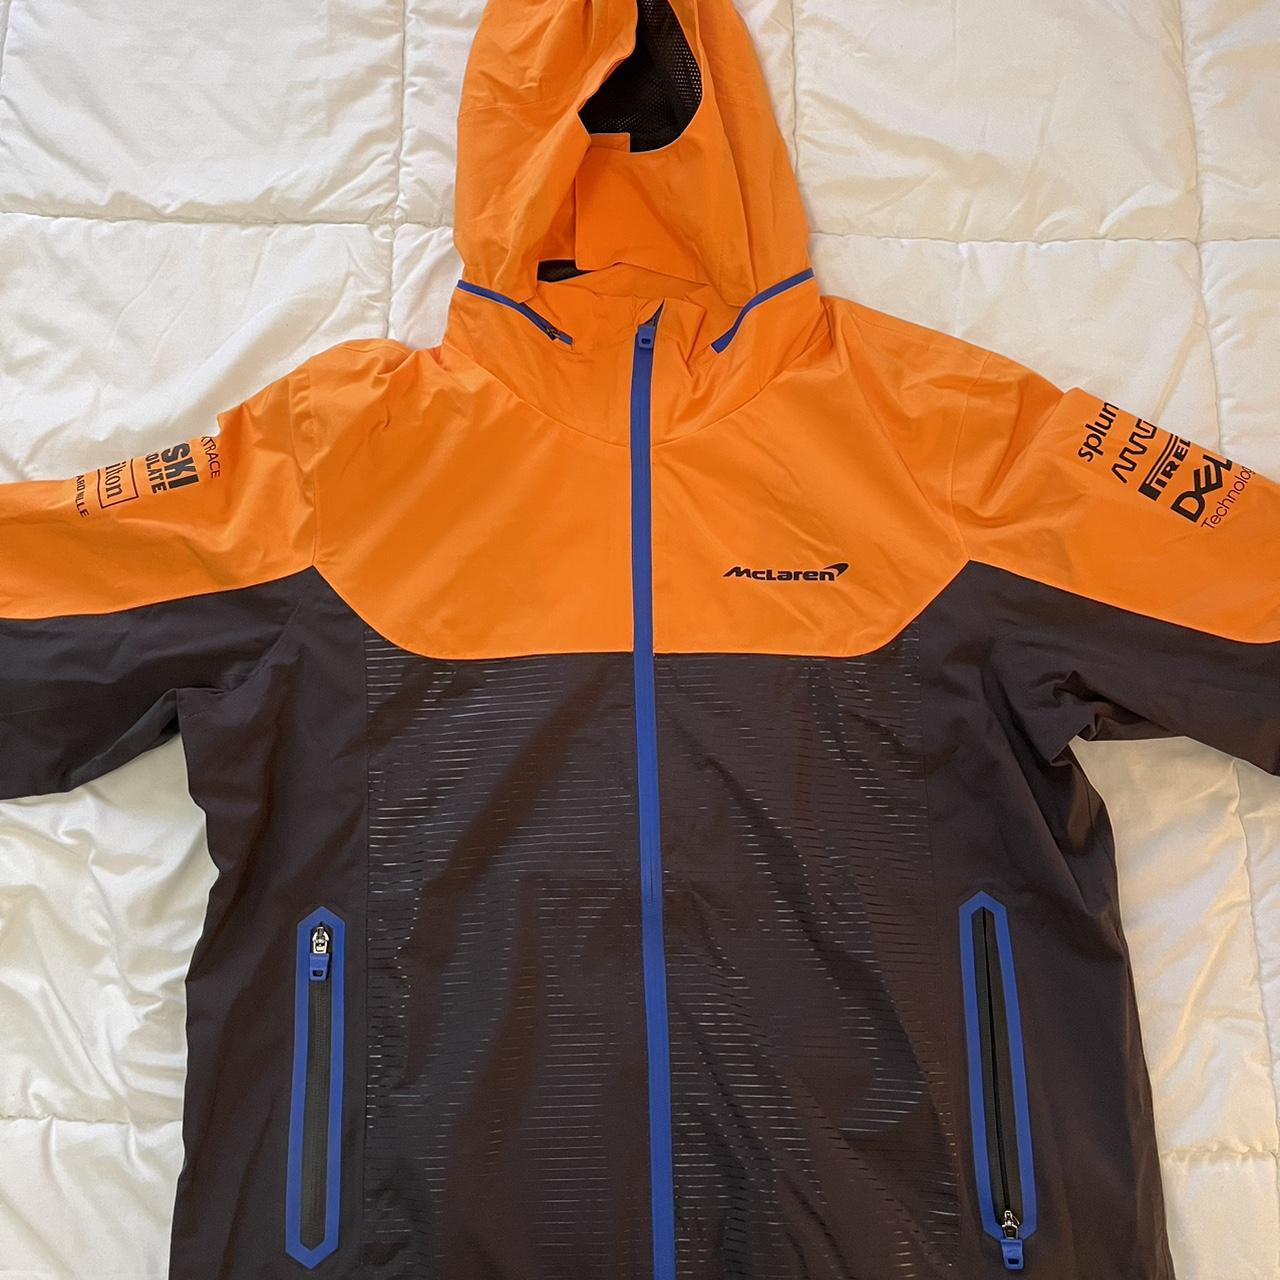 McLaren F1 official race team rain jacket... - Depop